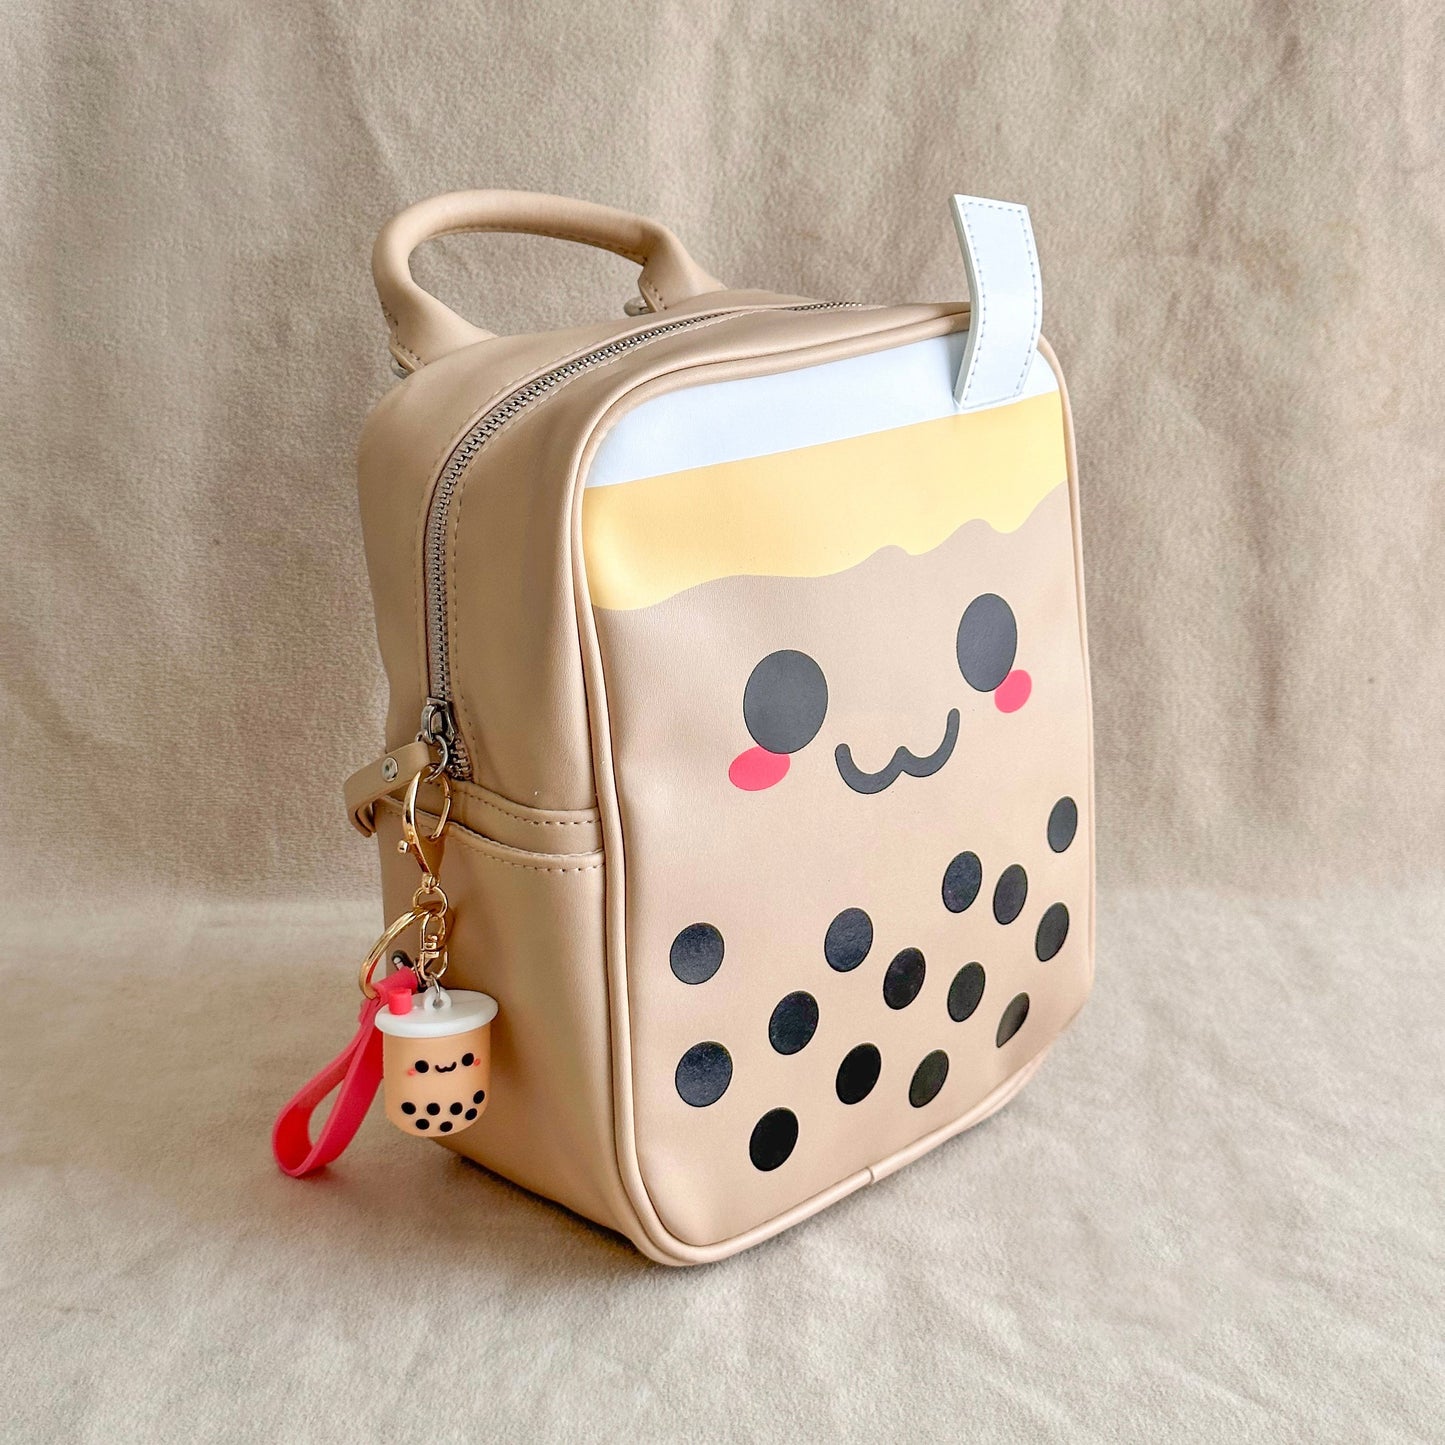 Mini Boba Backpack